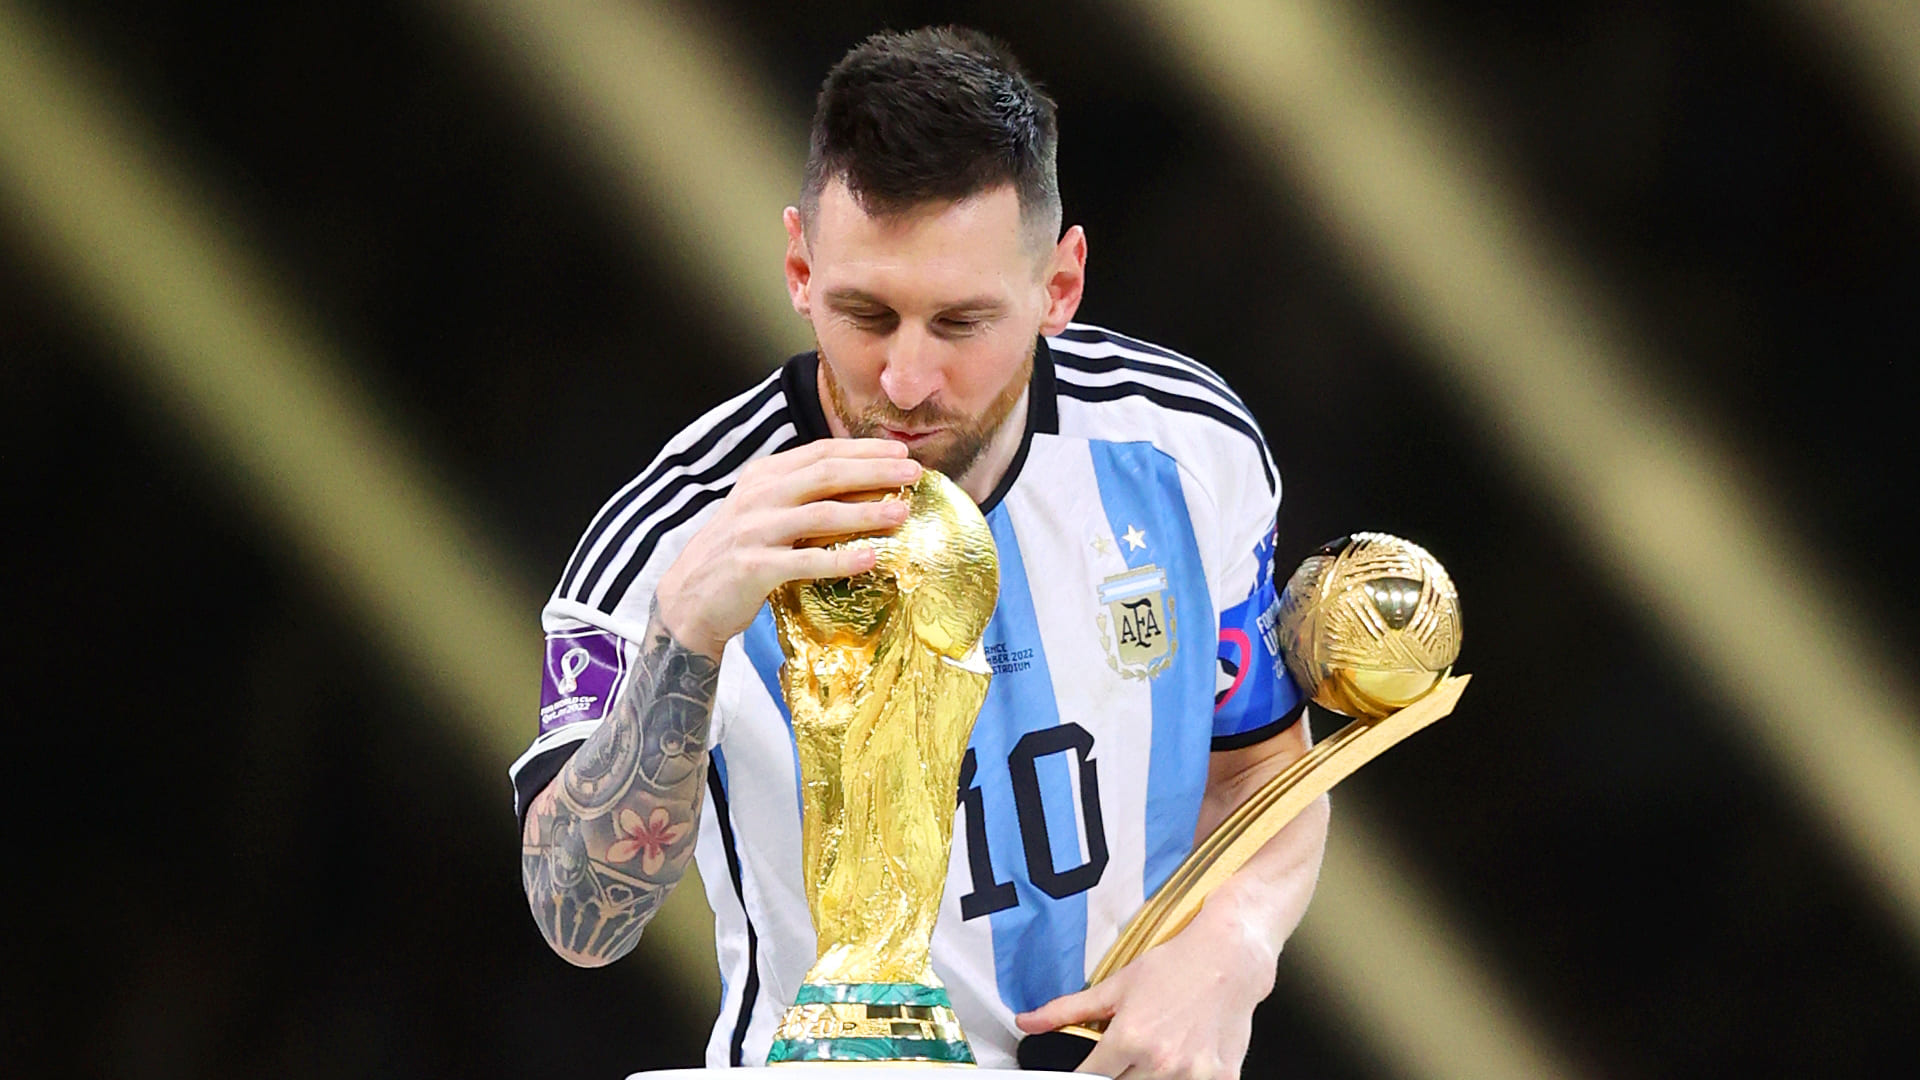 Sức mạnh và sự tự tin của Messi trên sân World Cup đã được thể hiện trong hình nền này. Sử dụng ảnh này để phát huy tinh thần chiến đấu và hãy cùng Messi và đội tuyển chiến thắng giải đấu đỉnh cao này.